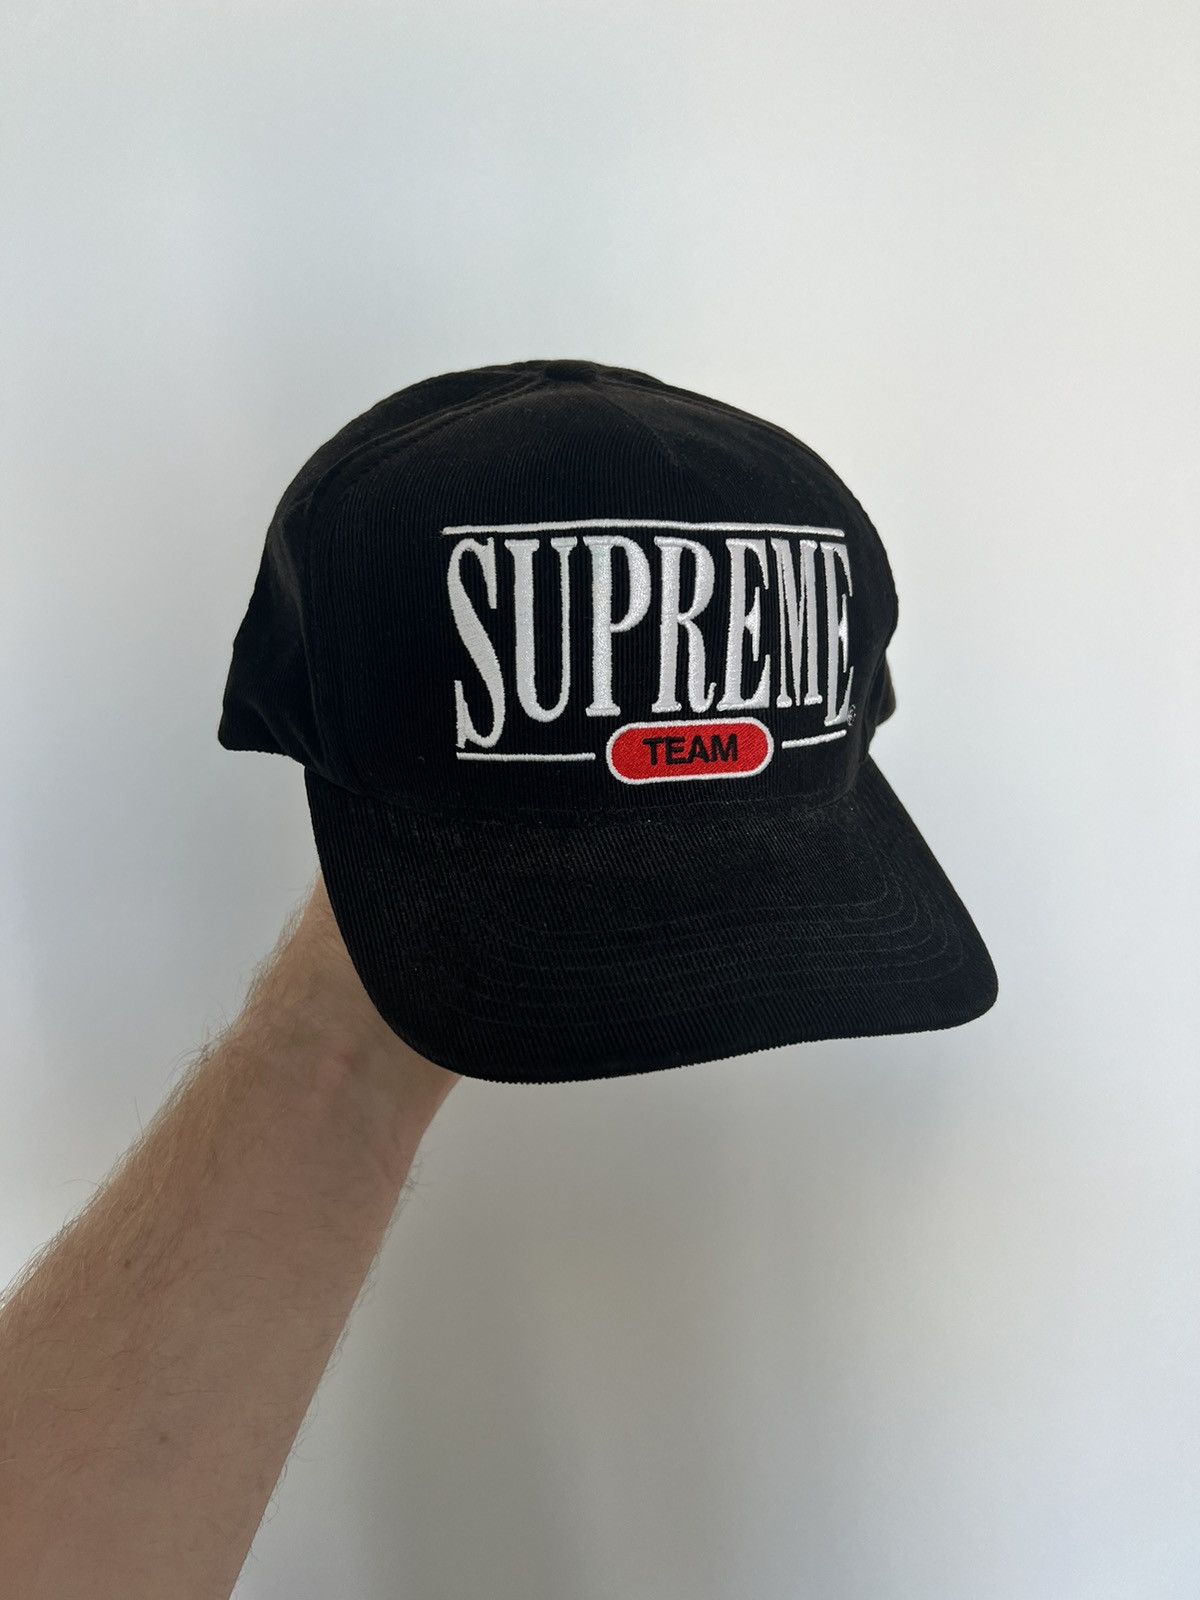 Supreme Classic Supreme Snapback Cap | Grailed